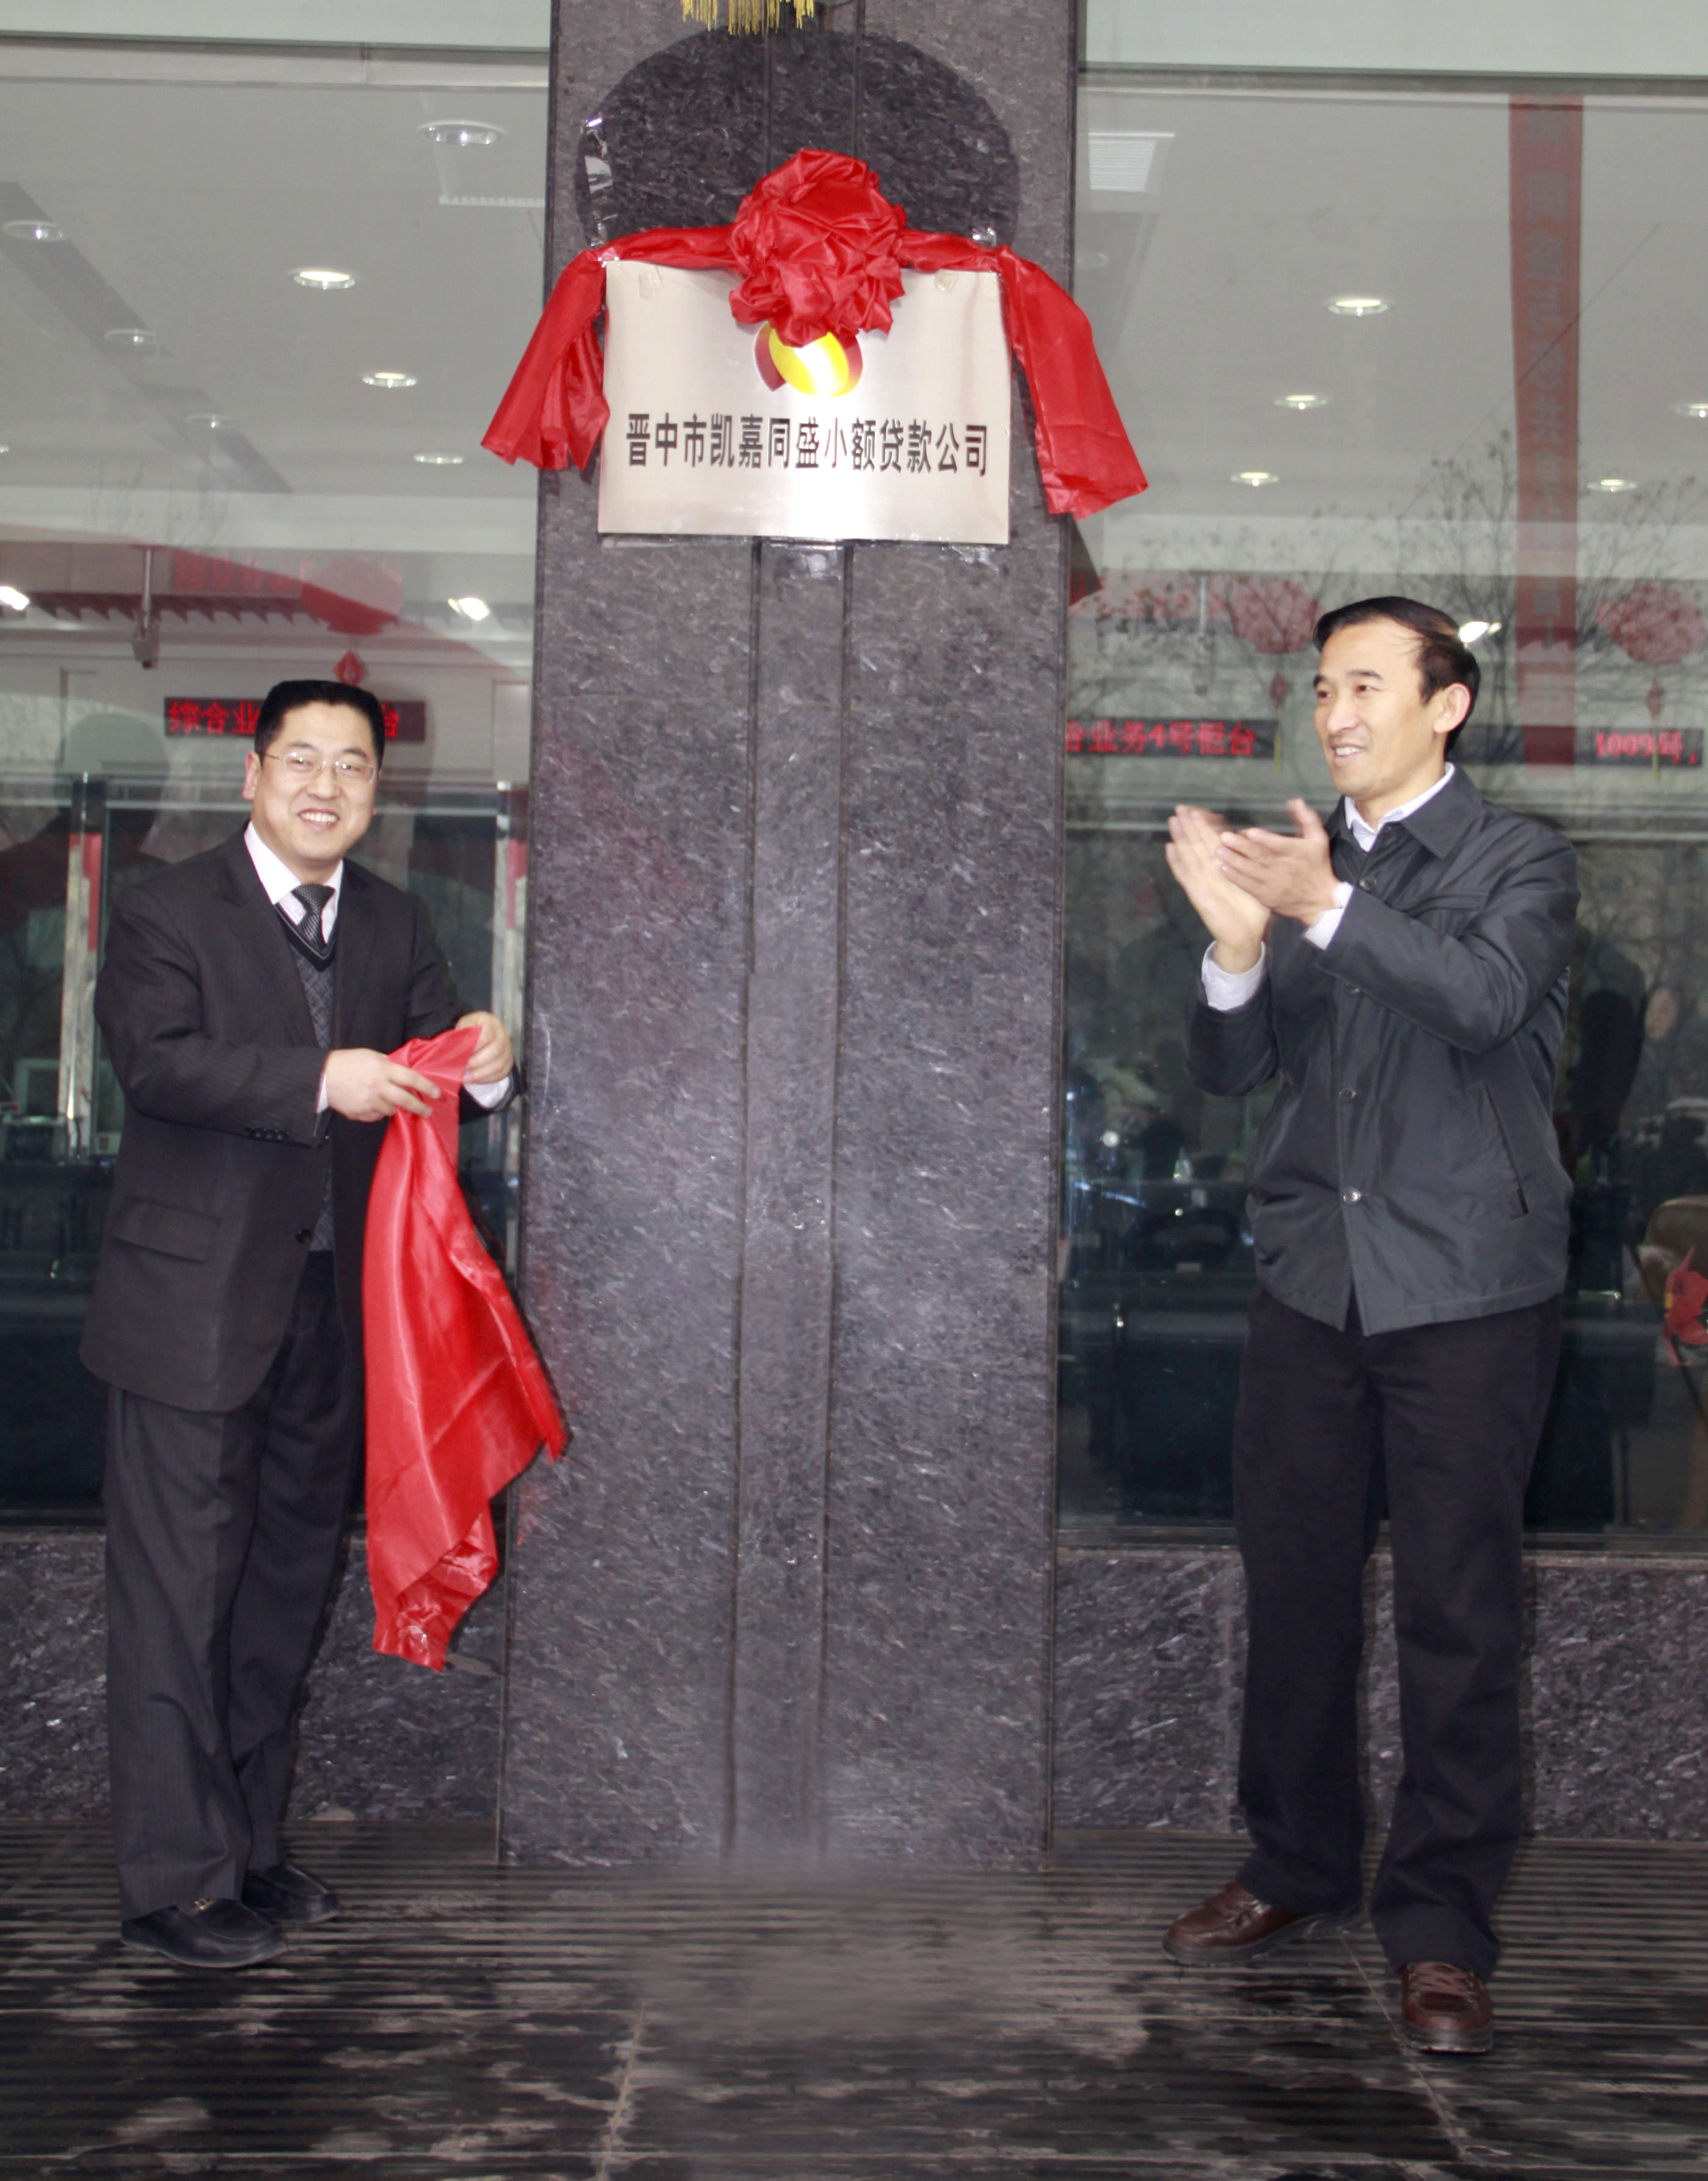 （25）2011年12月6日，晉中市凱嘉同盛小額貸款有限公司成立